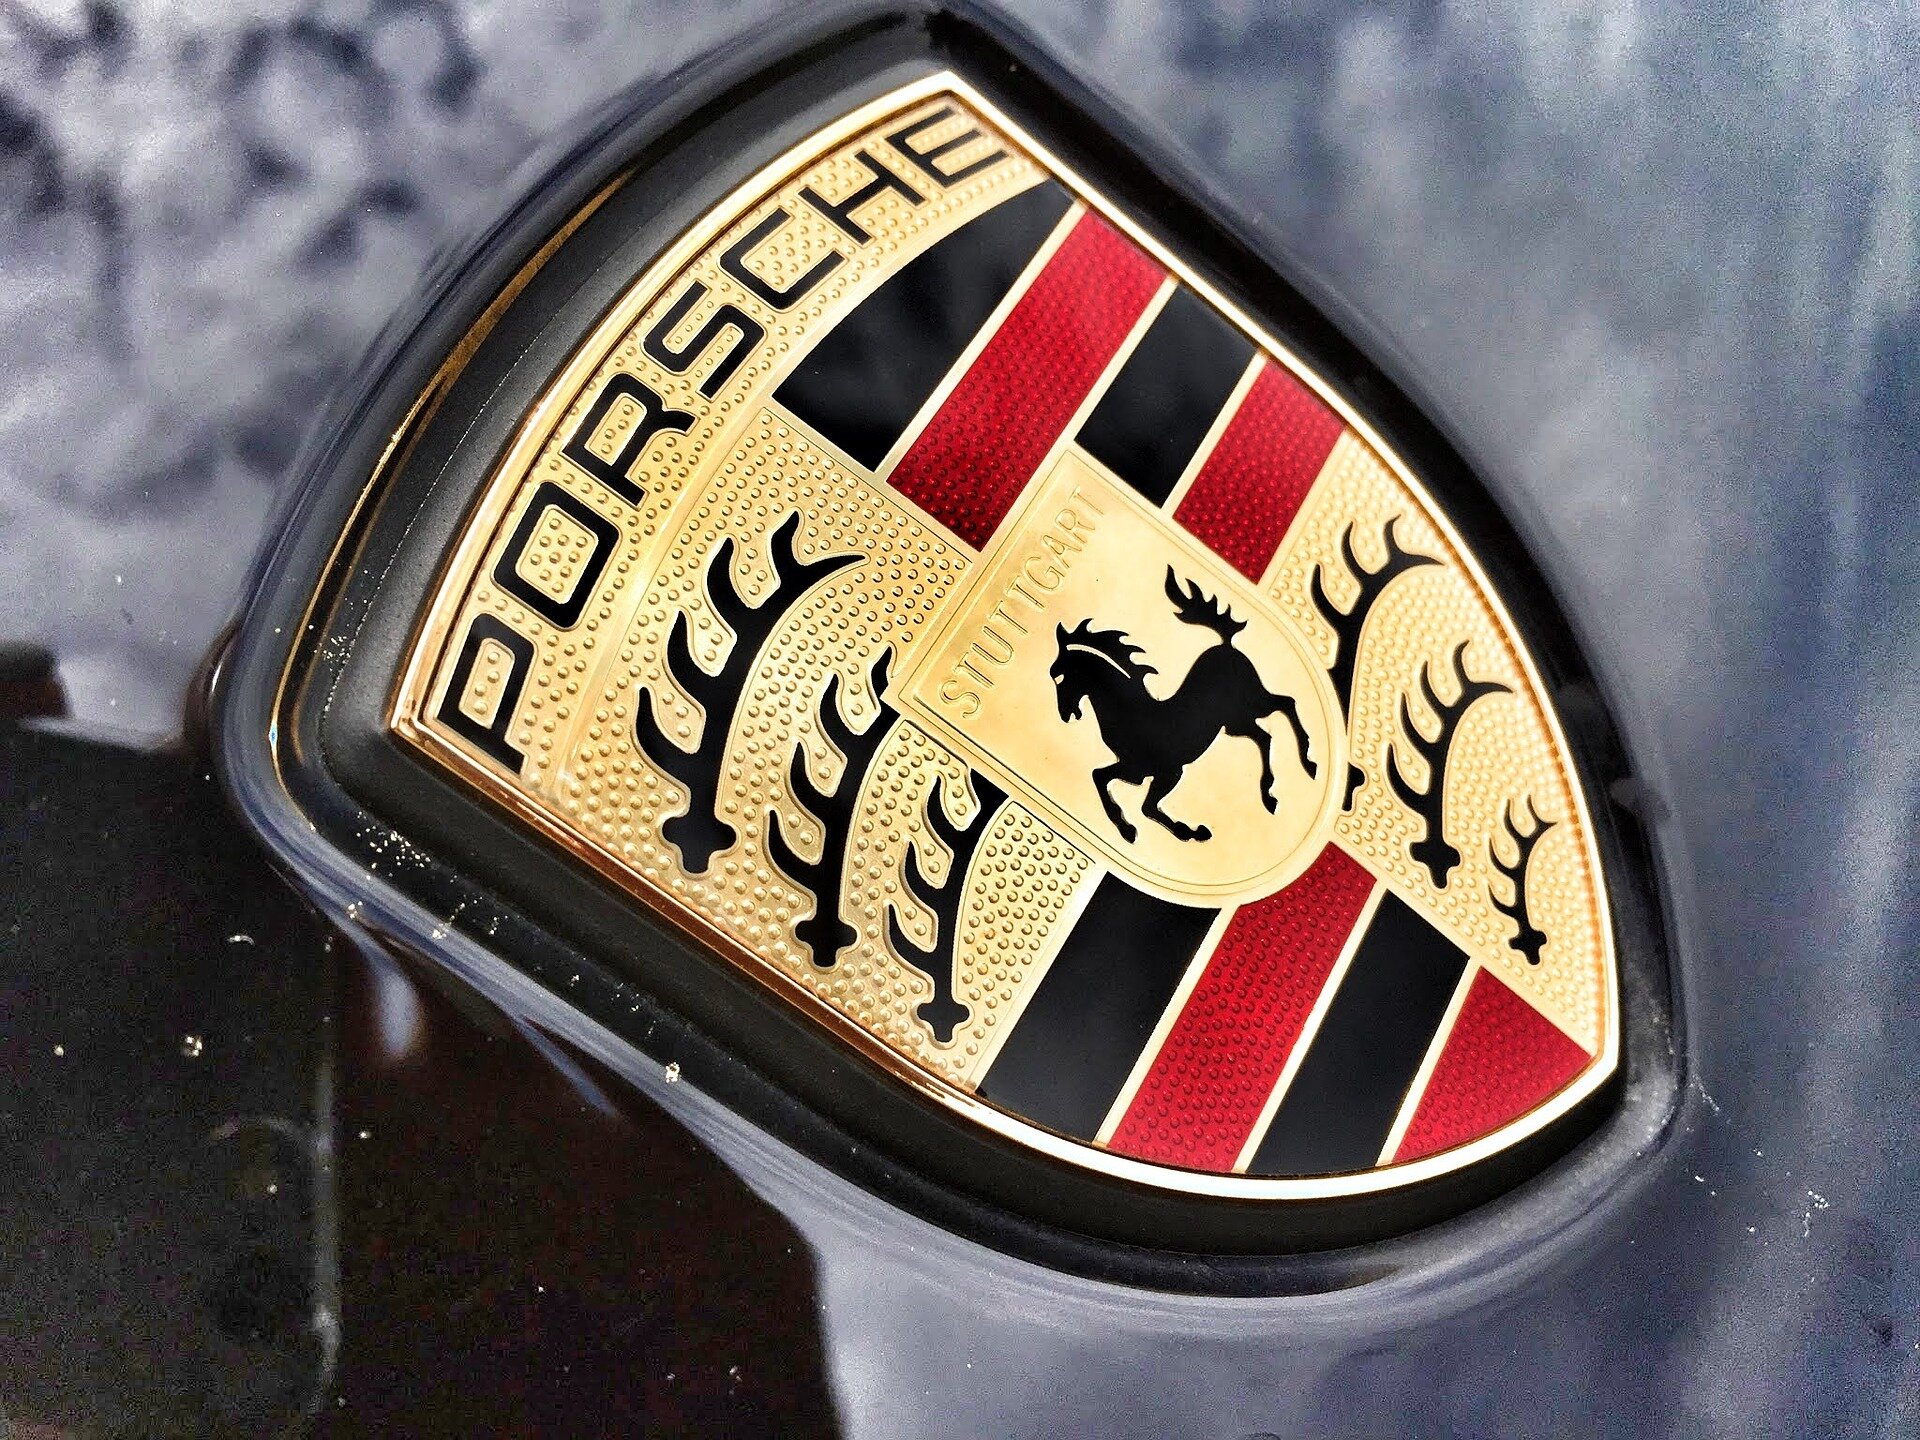 Volkswagen sets Porsche IPO at up to 9.4 billion euros